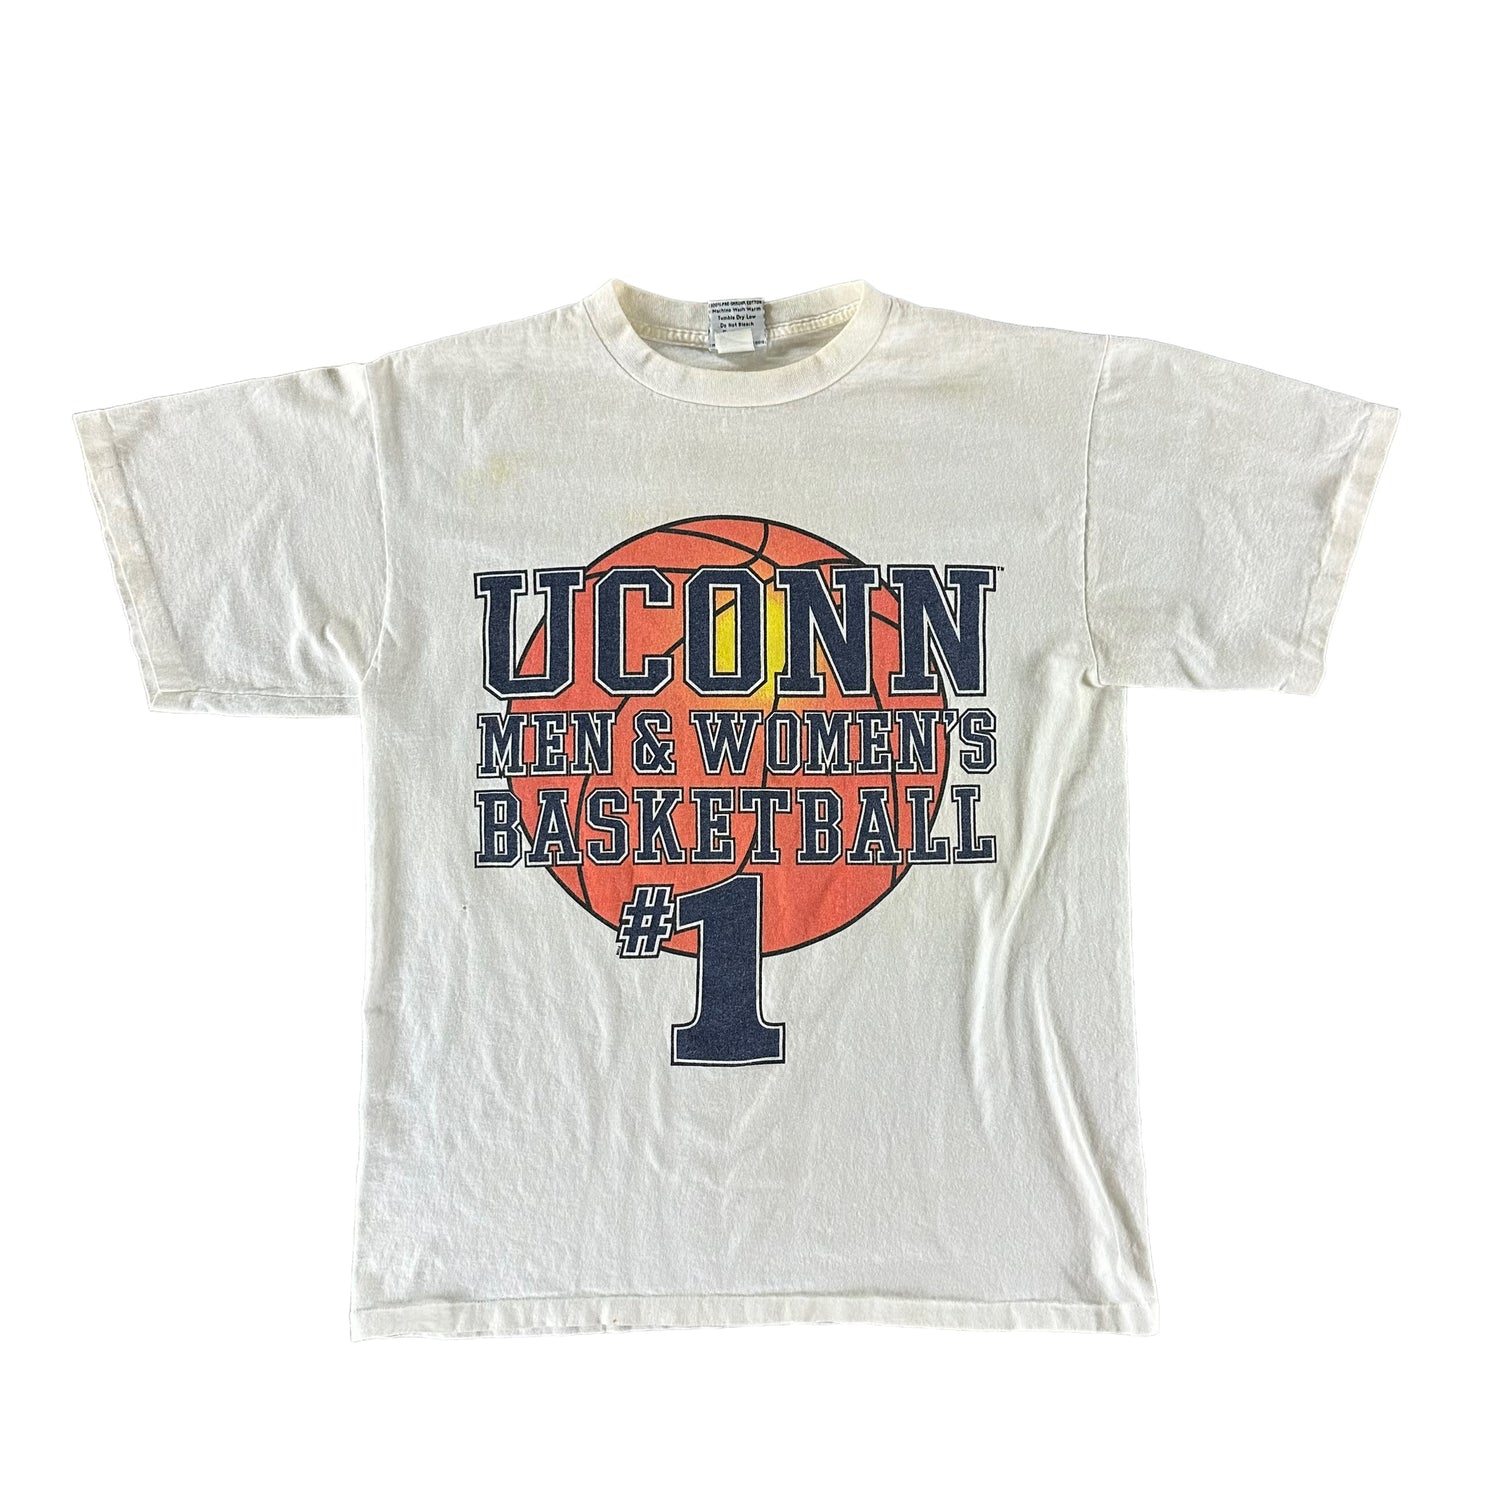 Vintage 1990s University of Connecticut T-shirt size Large